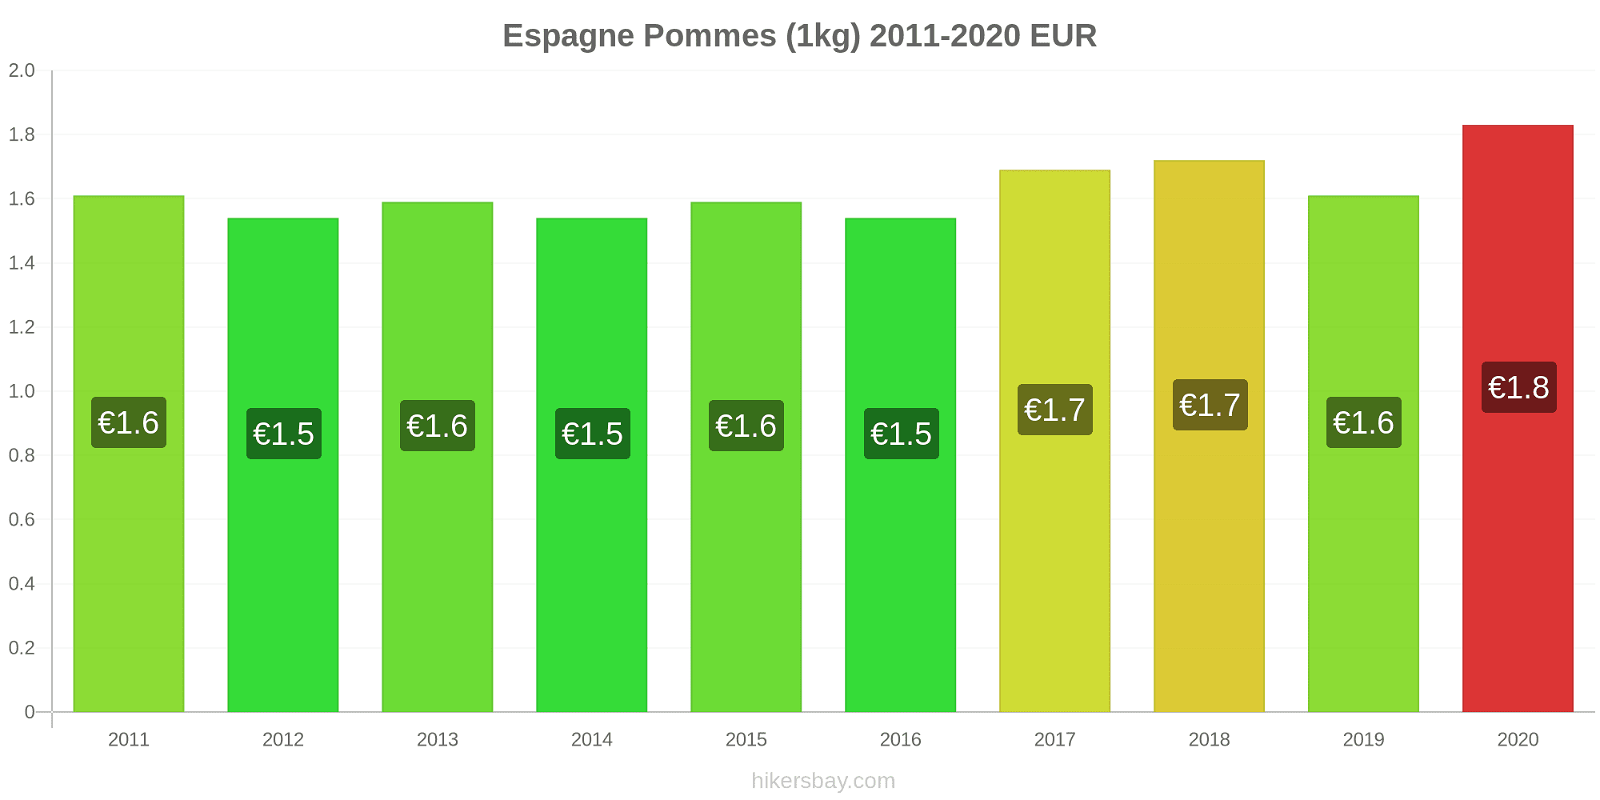 Espagne changements de prix Pommes (1kg) hikersbay.com